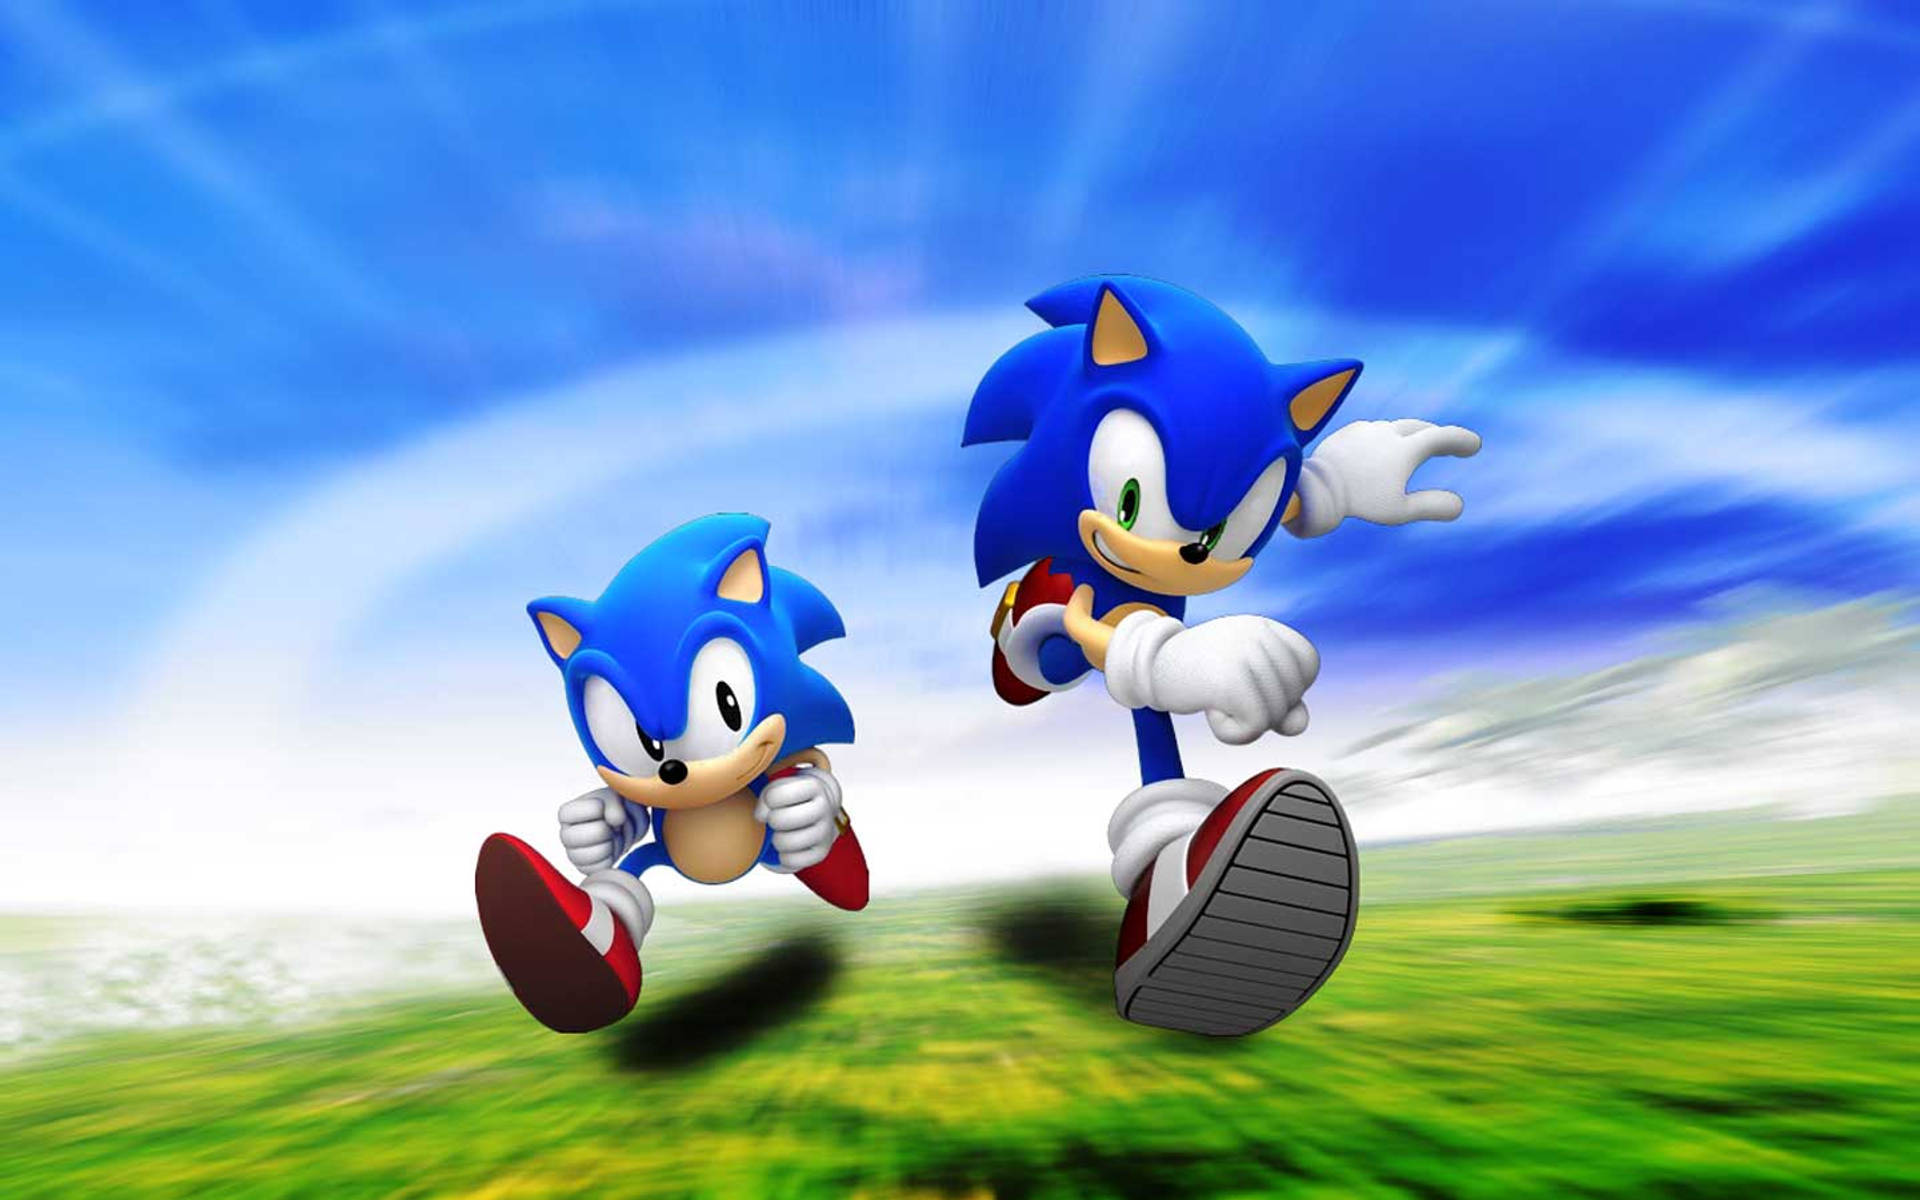 Sonicthe Hedgehog, Den Coolaste Videospelskaraktären Genom Tiderna. Wallpaper